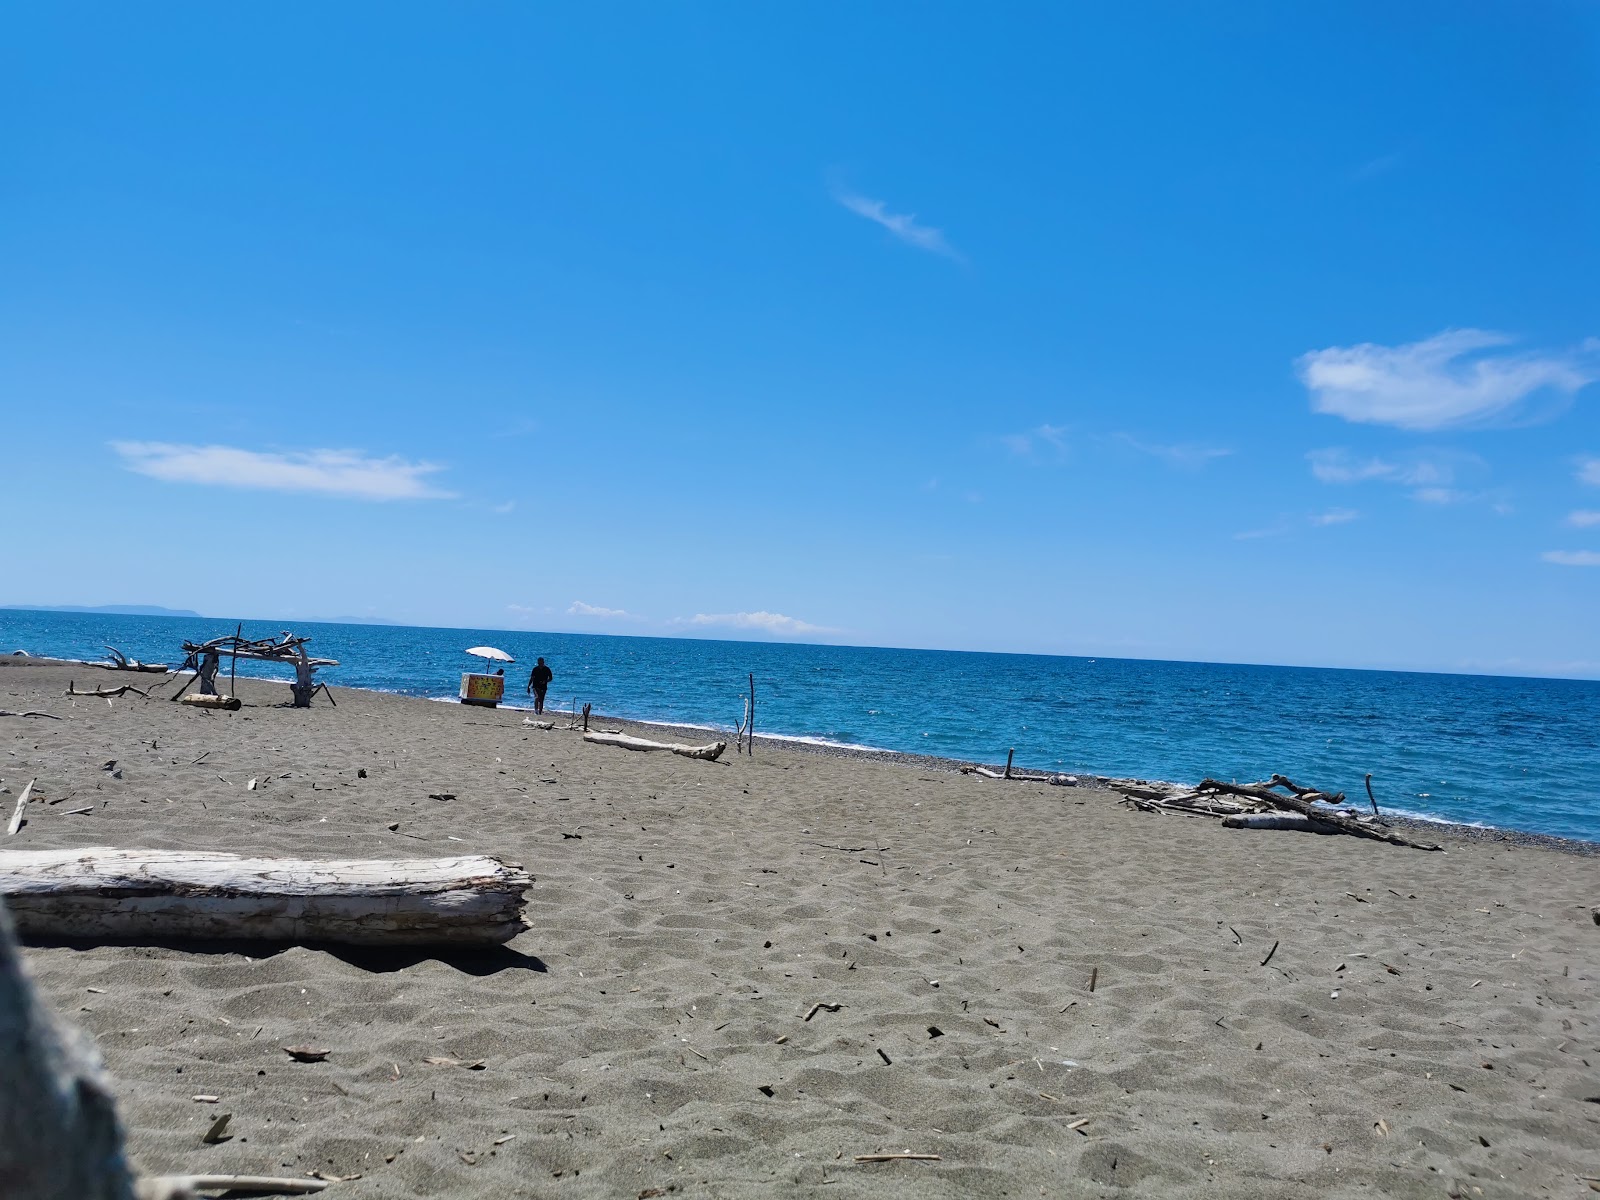 Photo of Bau Beach Le Gorette - popular place among relax connoisseurs